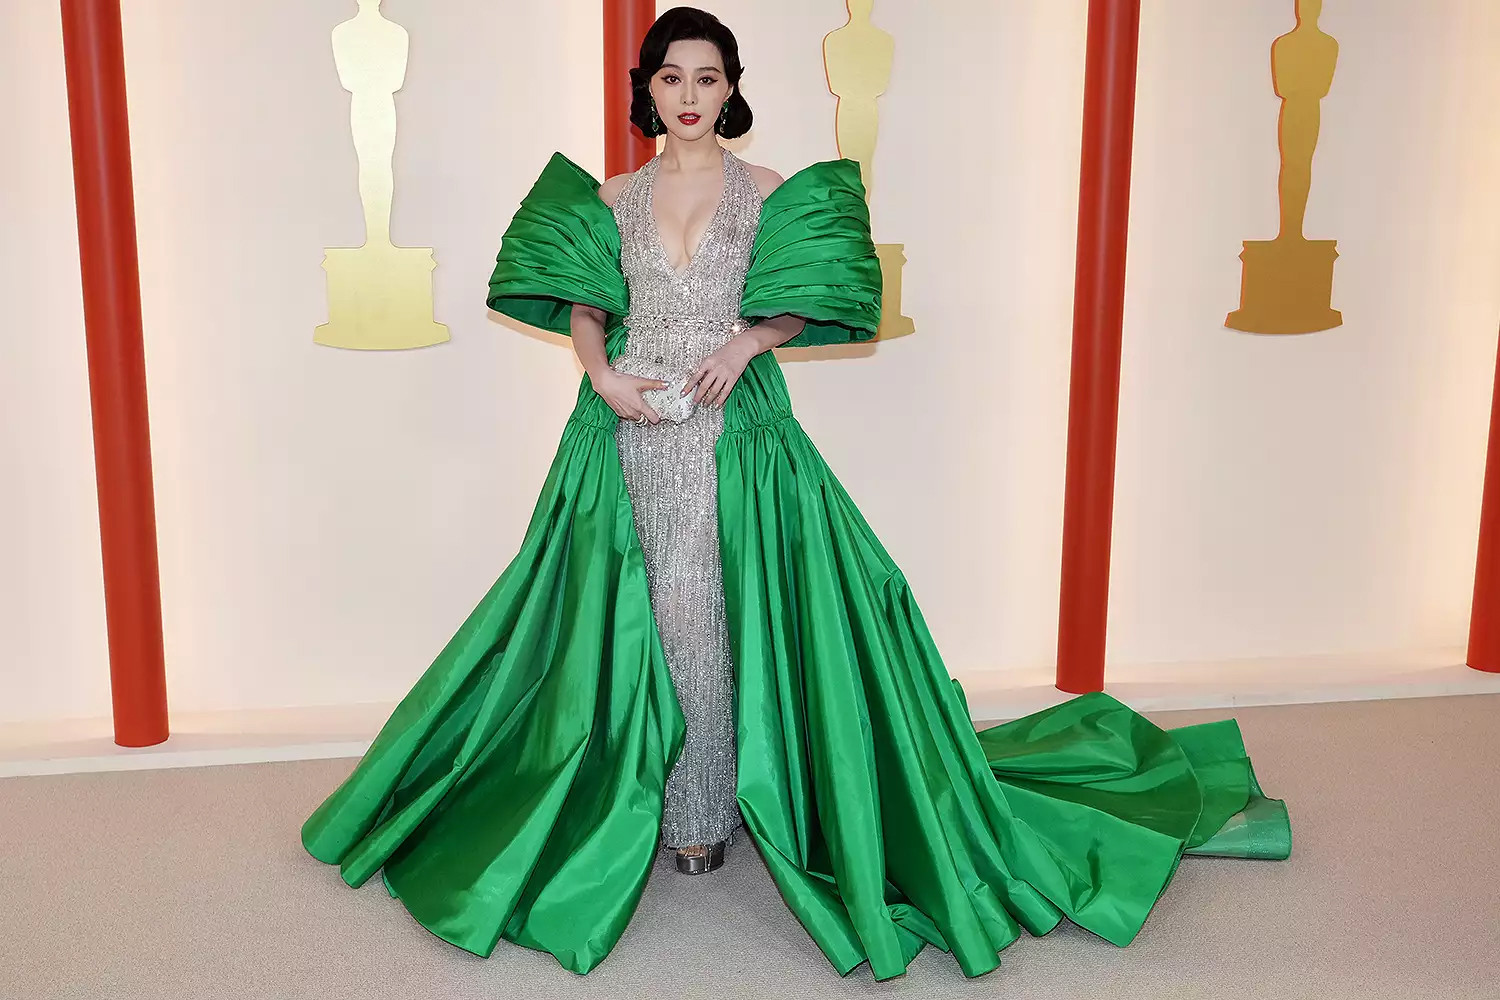 Hậu scandal trốn thuế, Phạm Băng Băng tái xuất xinh đẹp gây chú ý tại thảm đỏ Oscar - Ảnh 1